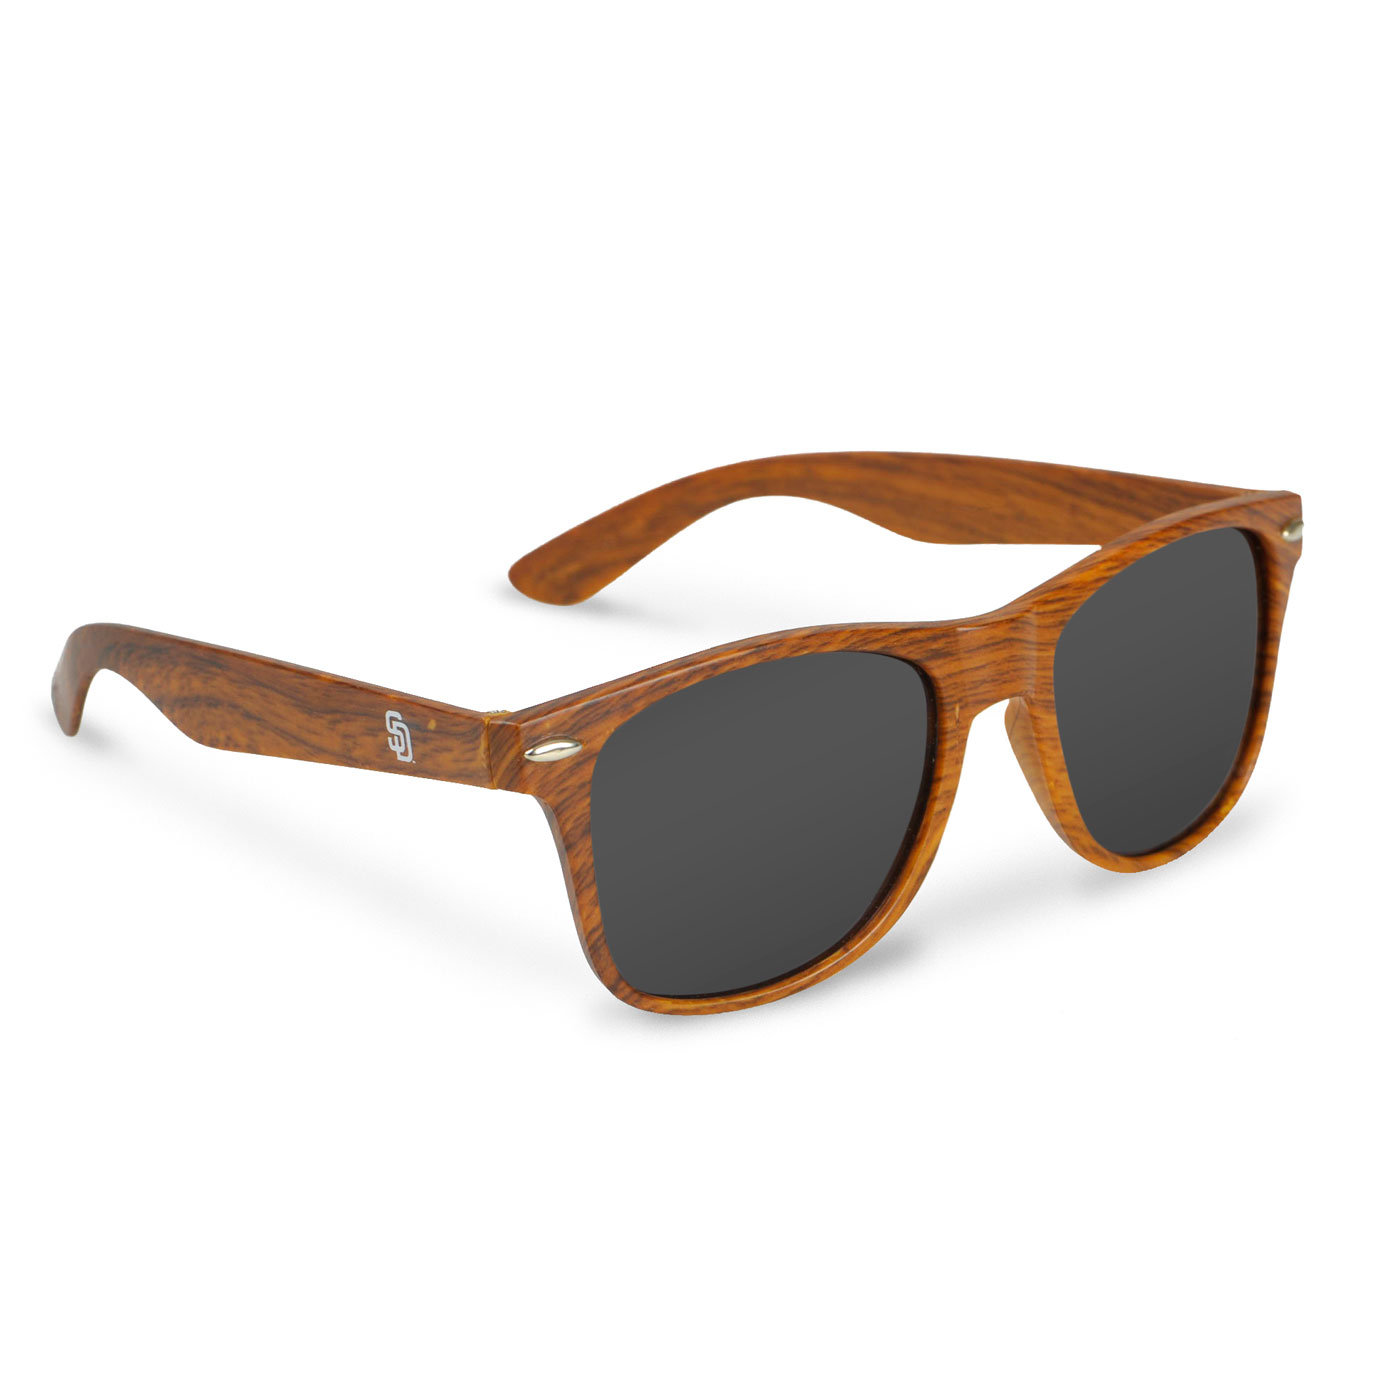 Sunglasses - Wood